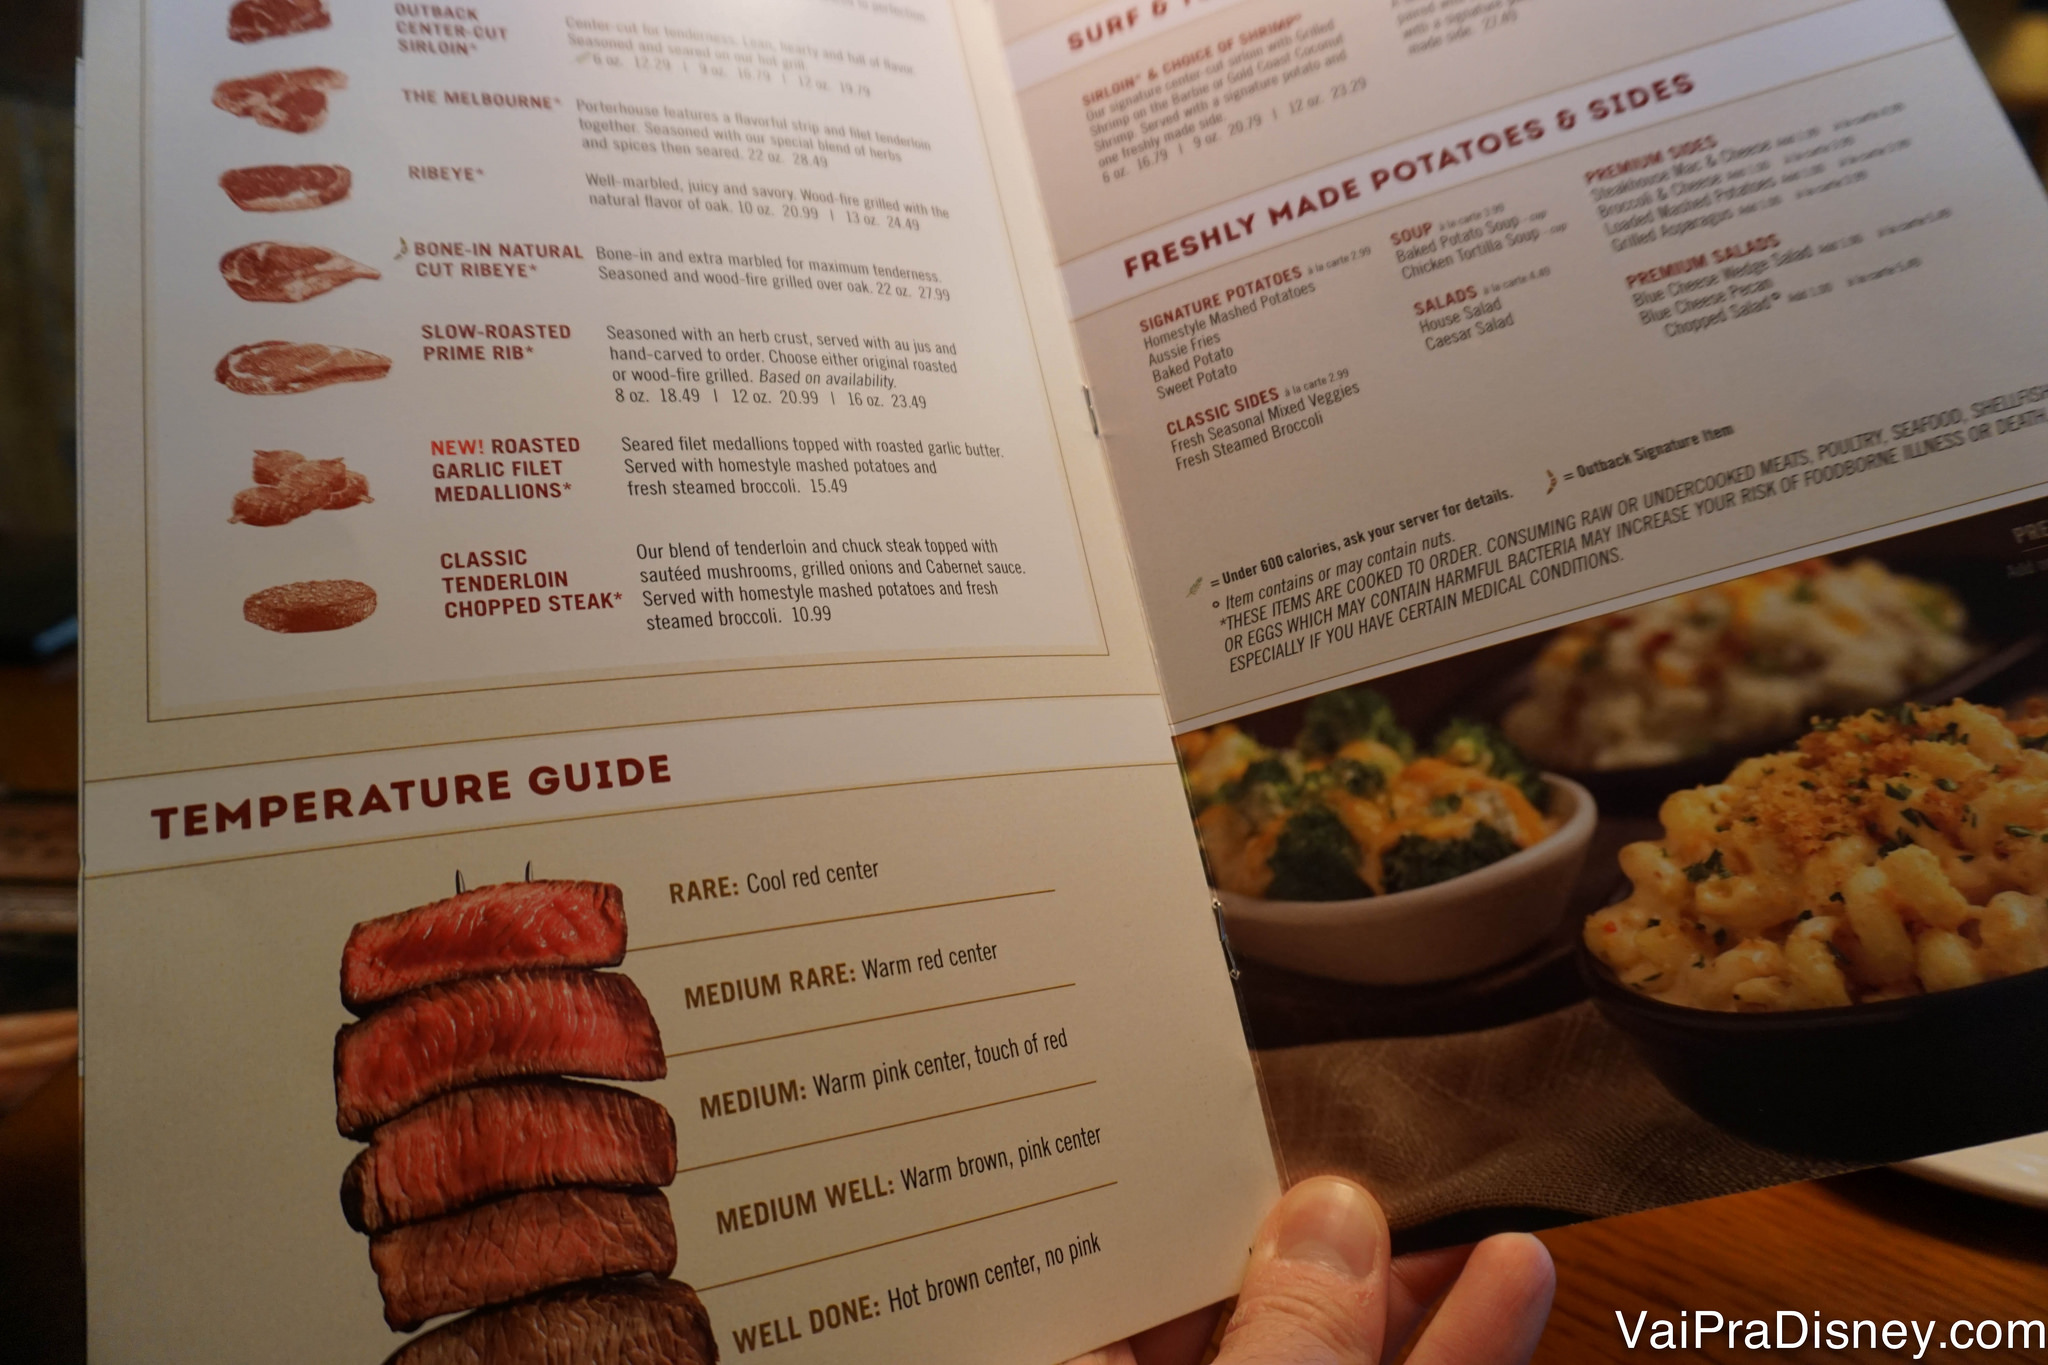 Outback Steakhouse em Orlando: é igual a do Brasil? - cardápio outback preços